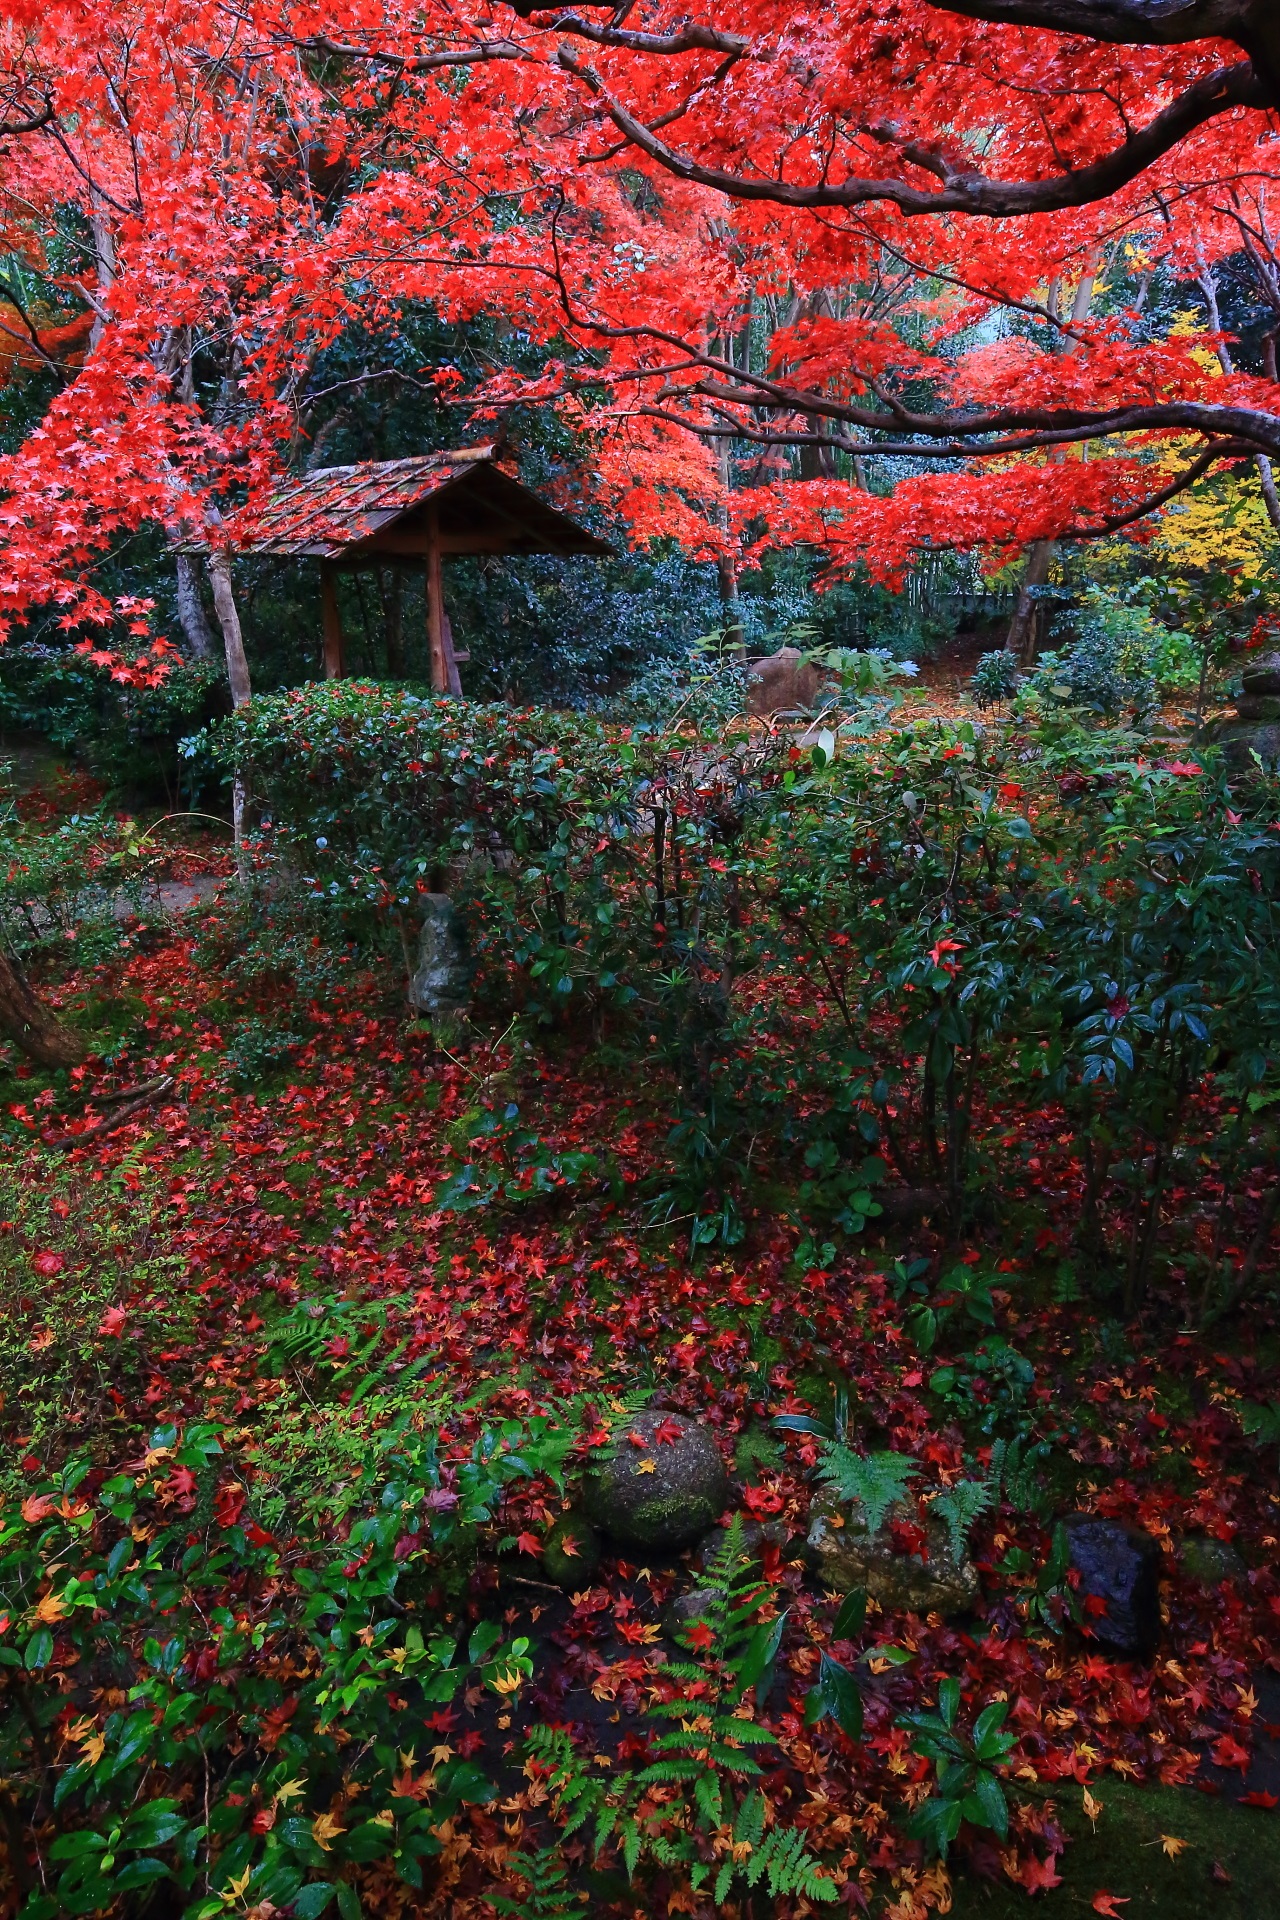 厭離庵の風情ある庭園を彩る降り注ぐ紅葉と華やかな散りもみじ